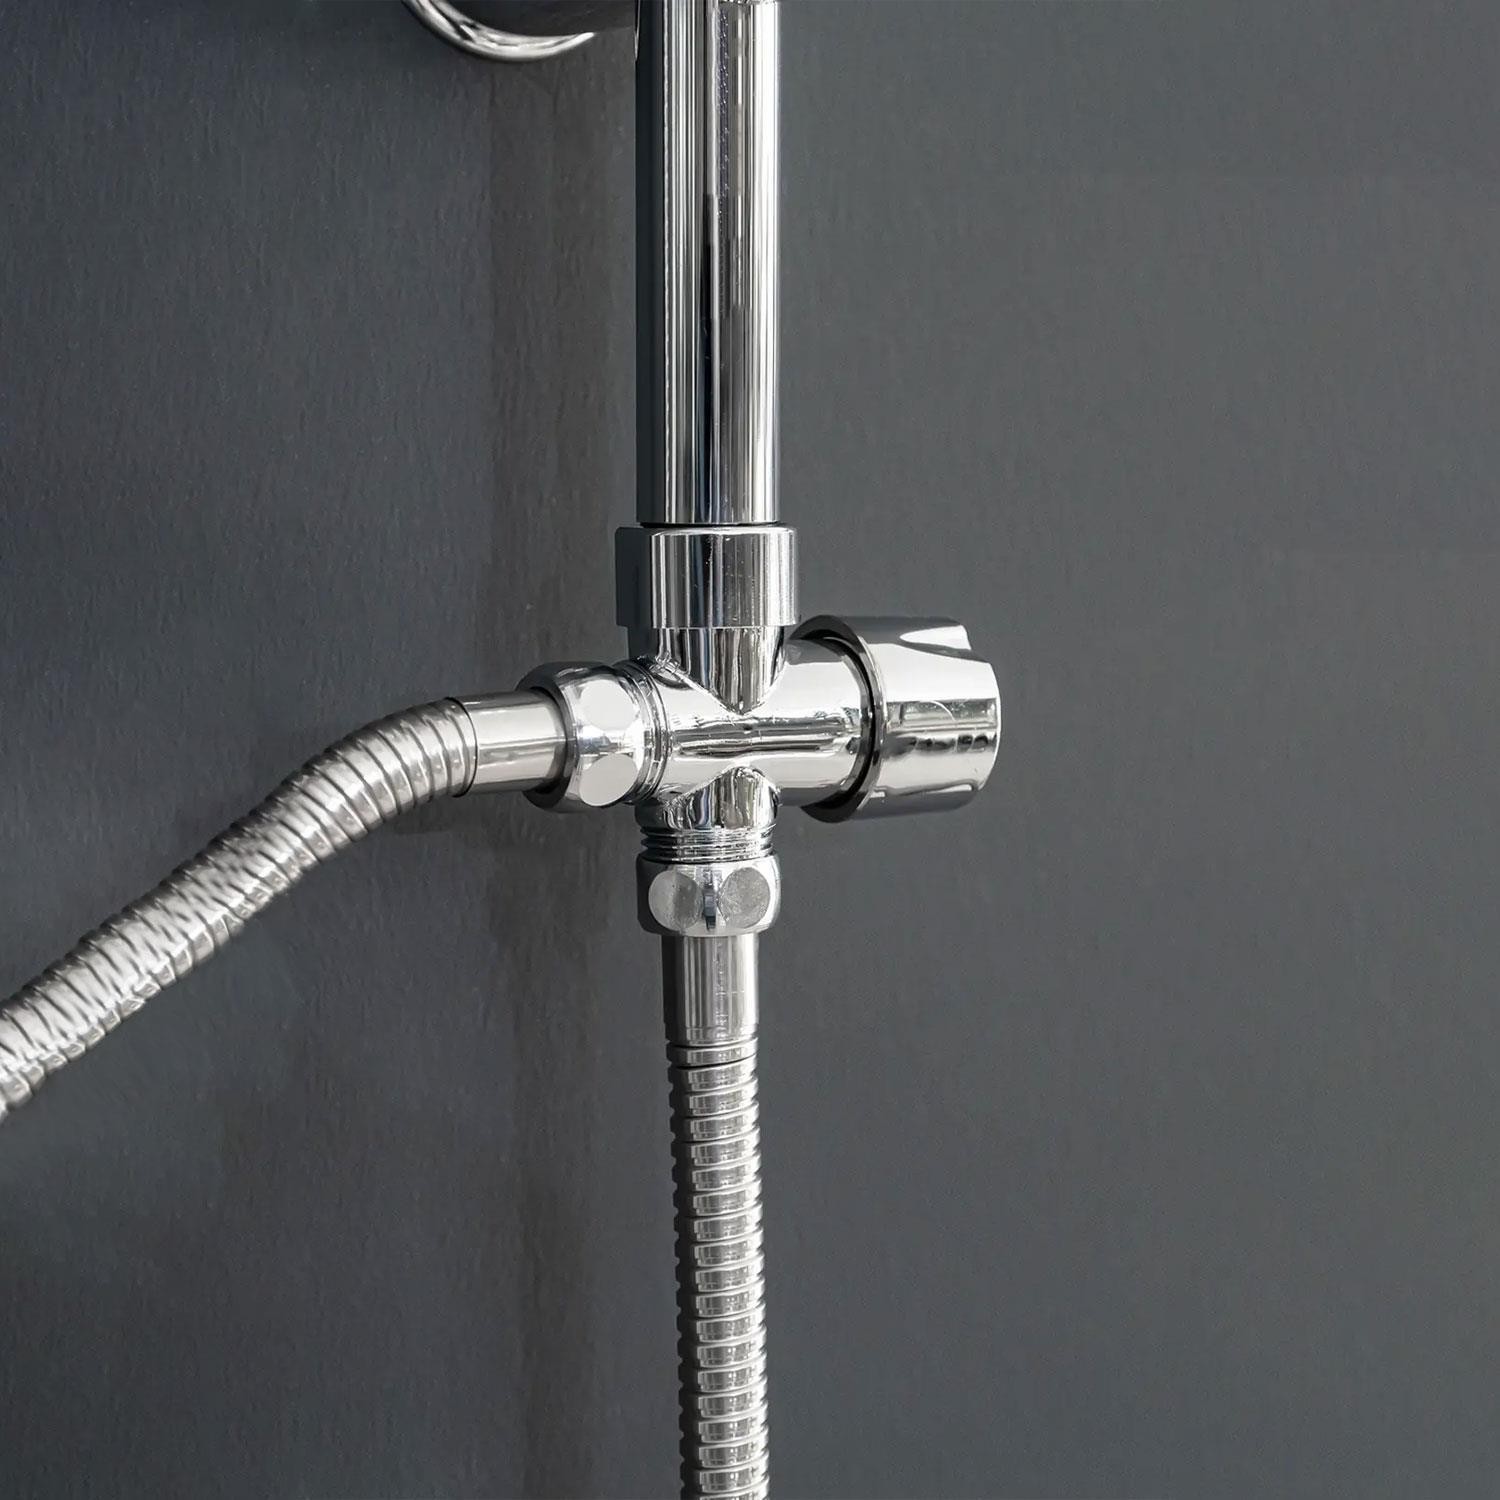 Robot Tepe Duş Seti Takımı Shower Yağmurlama Yuvarşal Lüx Banyo Masaj Duş Başlığı Sistemi Krom